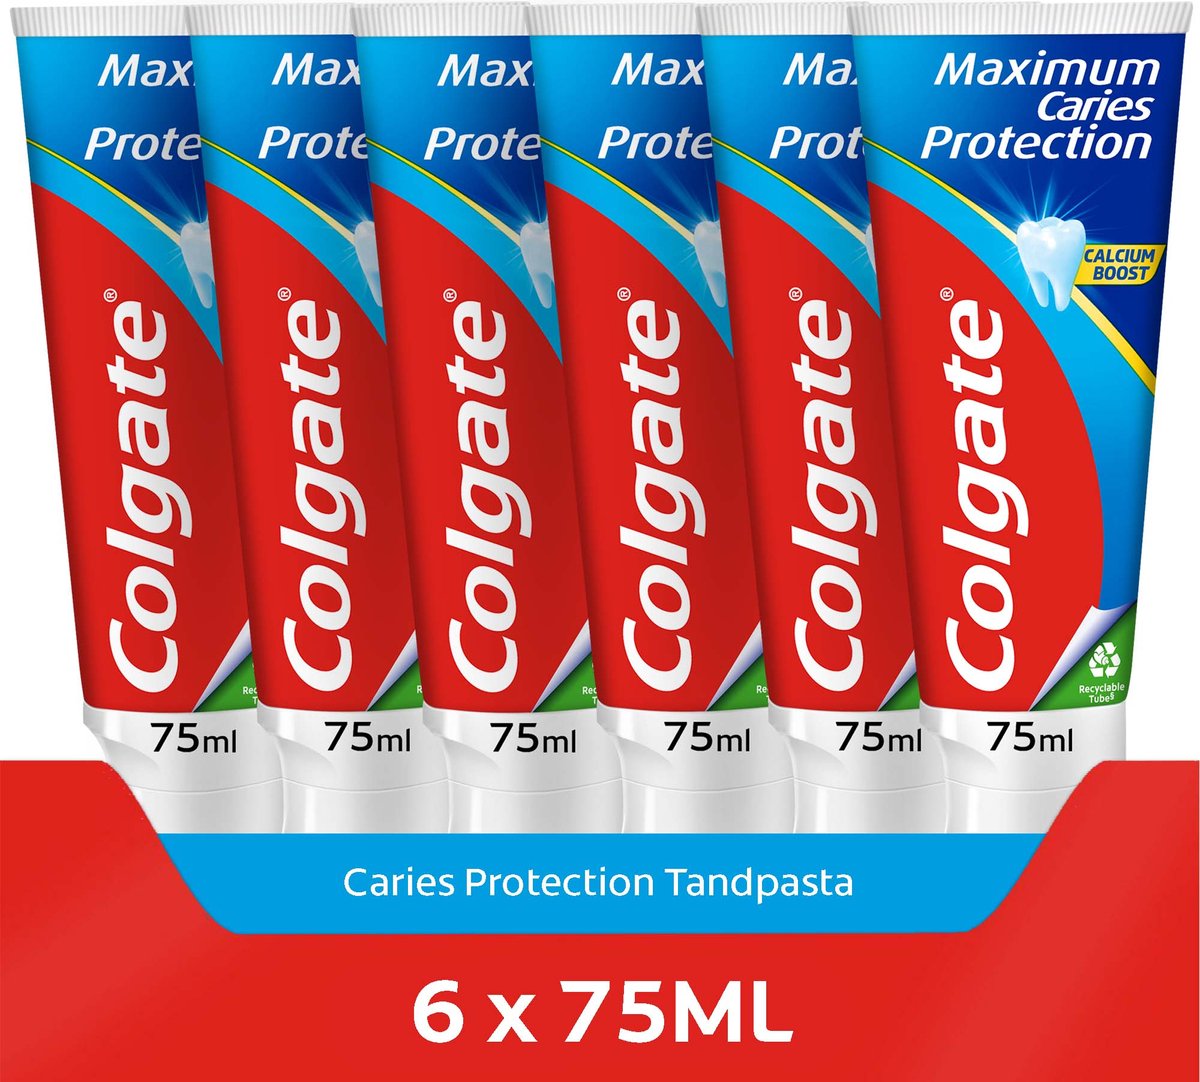 Colgate Maximum Caries Protection tandpasta 6 x 75ml - Tegen gaatjes - Voordeelverpakking